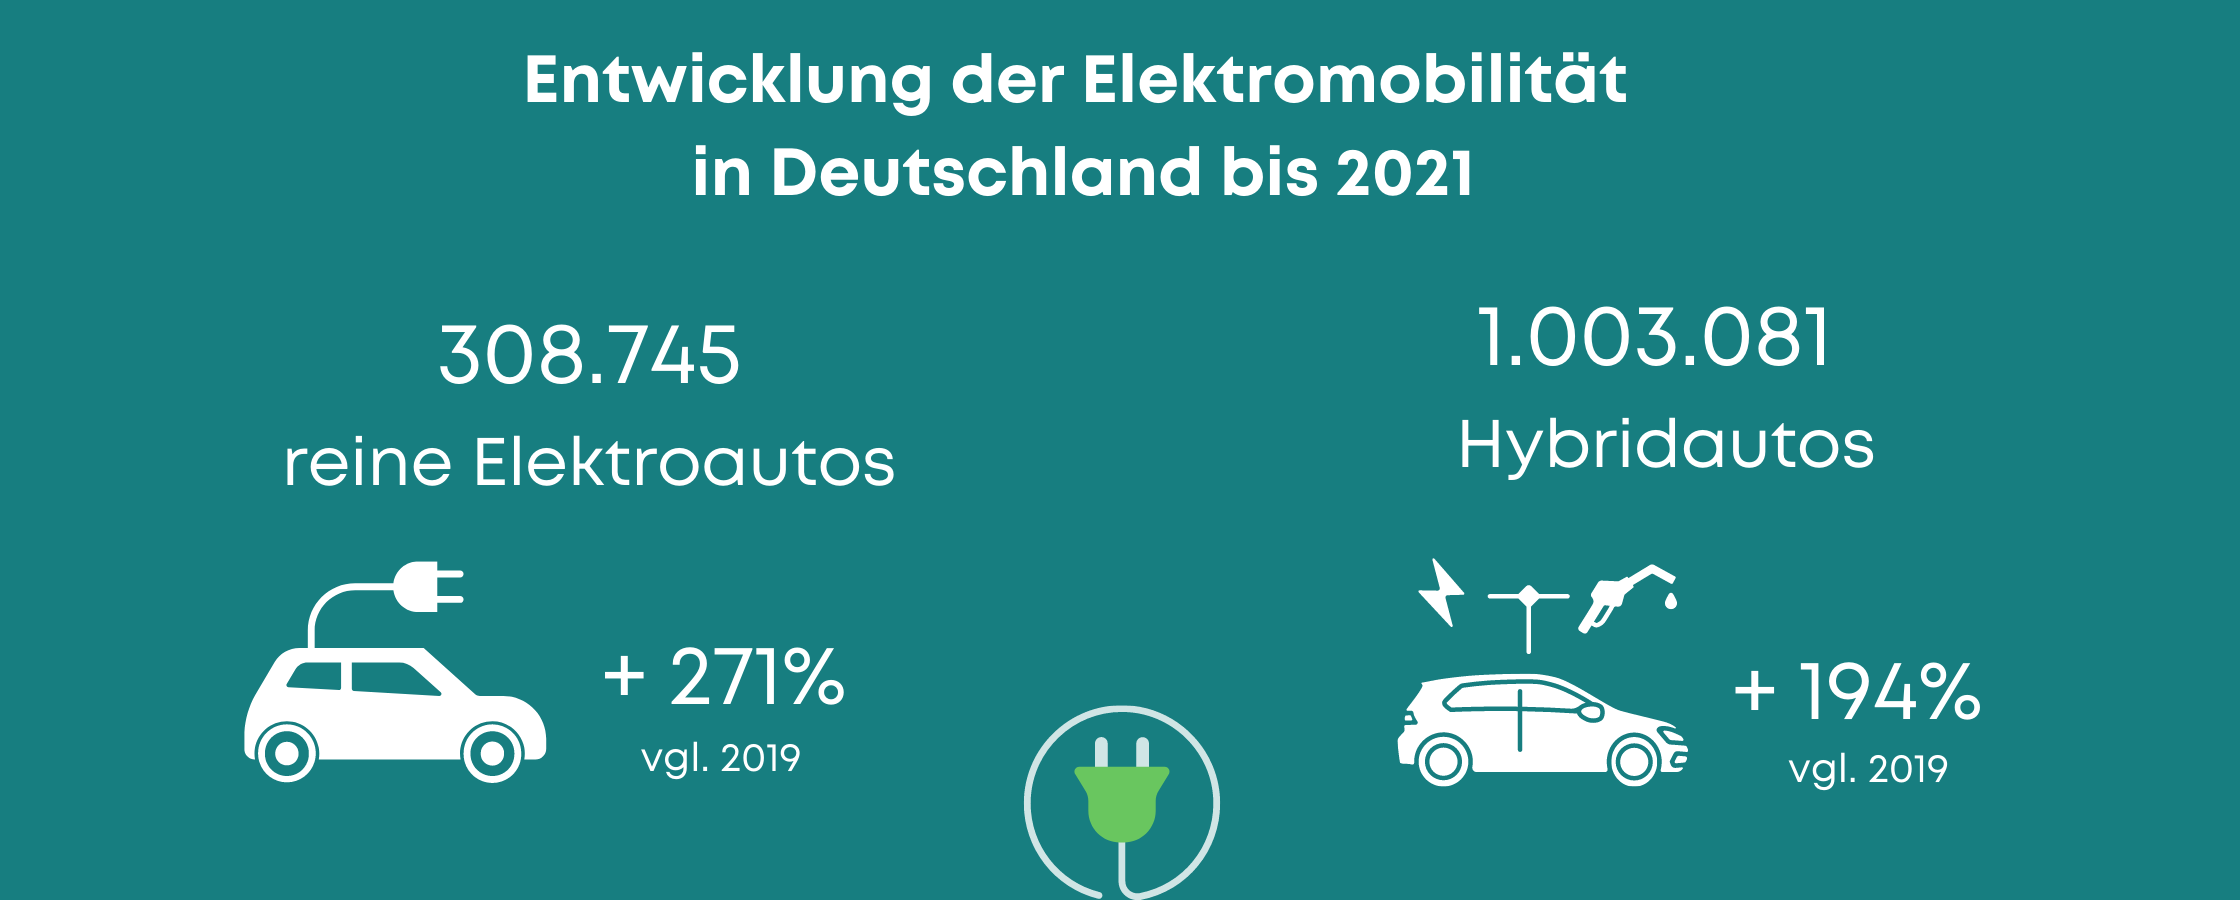 Enwicklung der Elektromobilität in Deutschland Stand heute